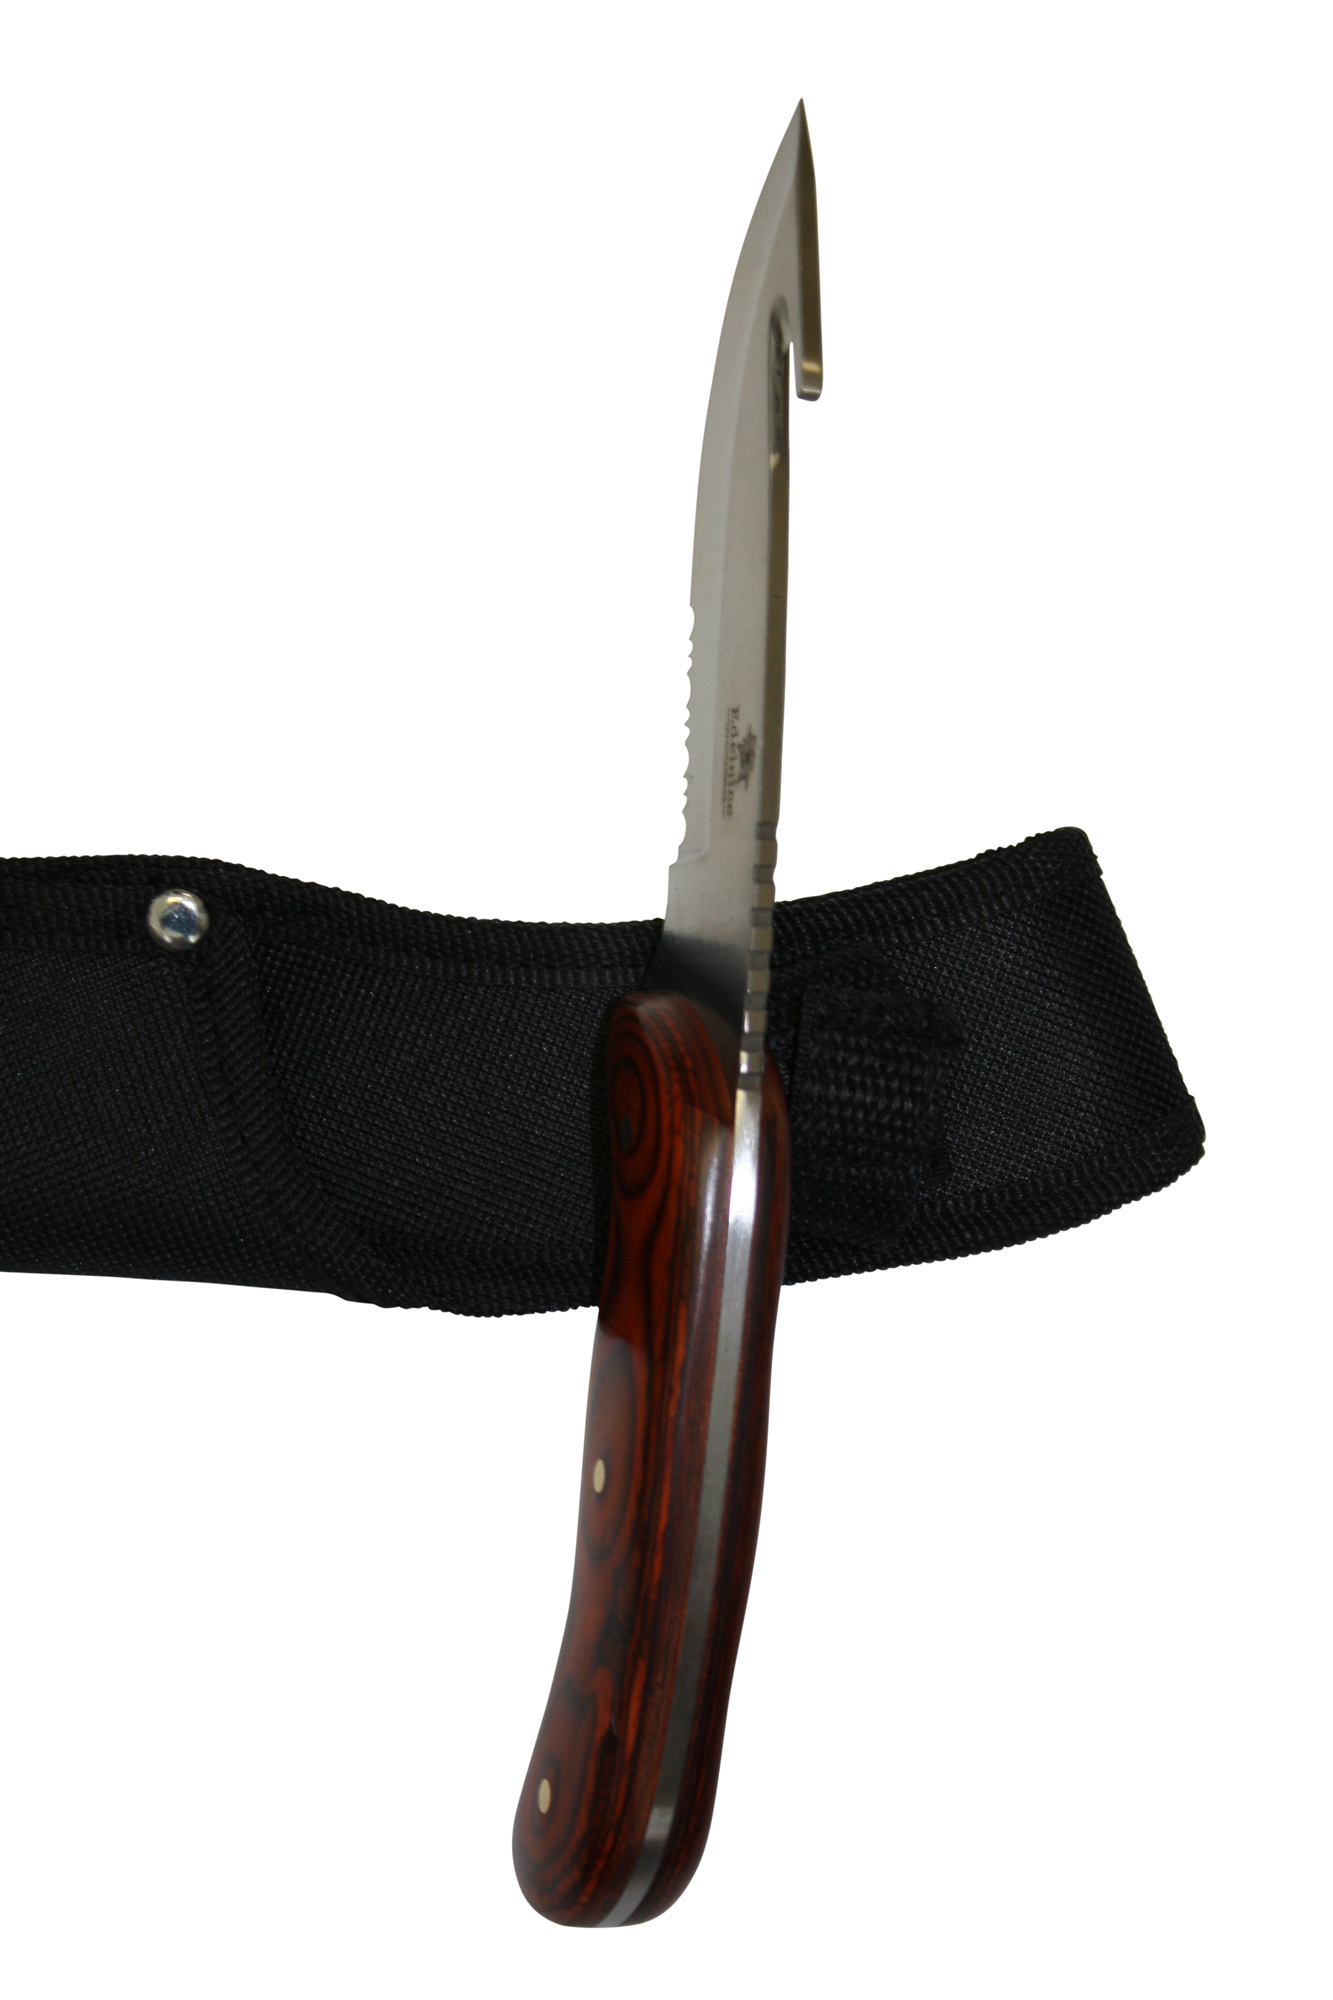 Jagdmesser mit holzgriff - Die hochwertigsten Jagdmesser mit holzgriff analysiert